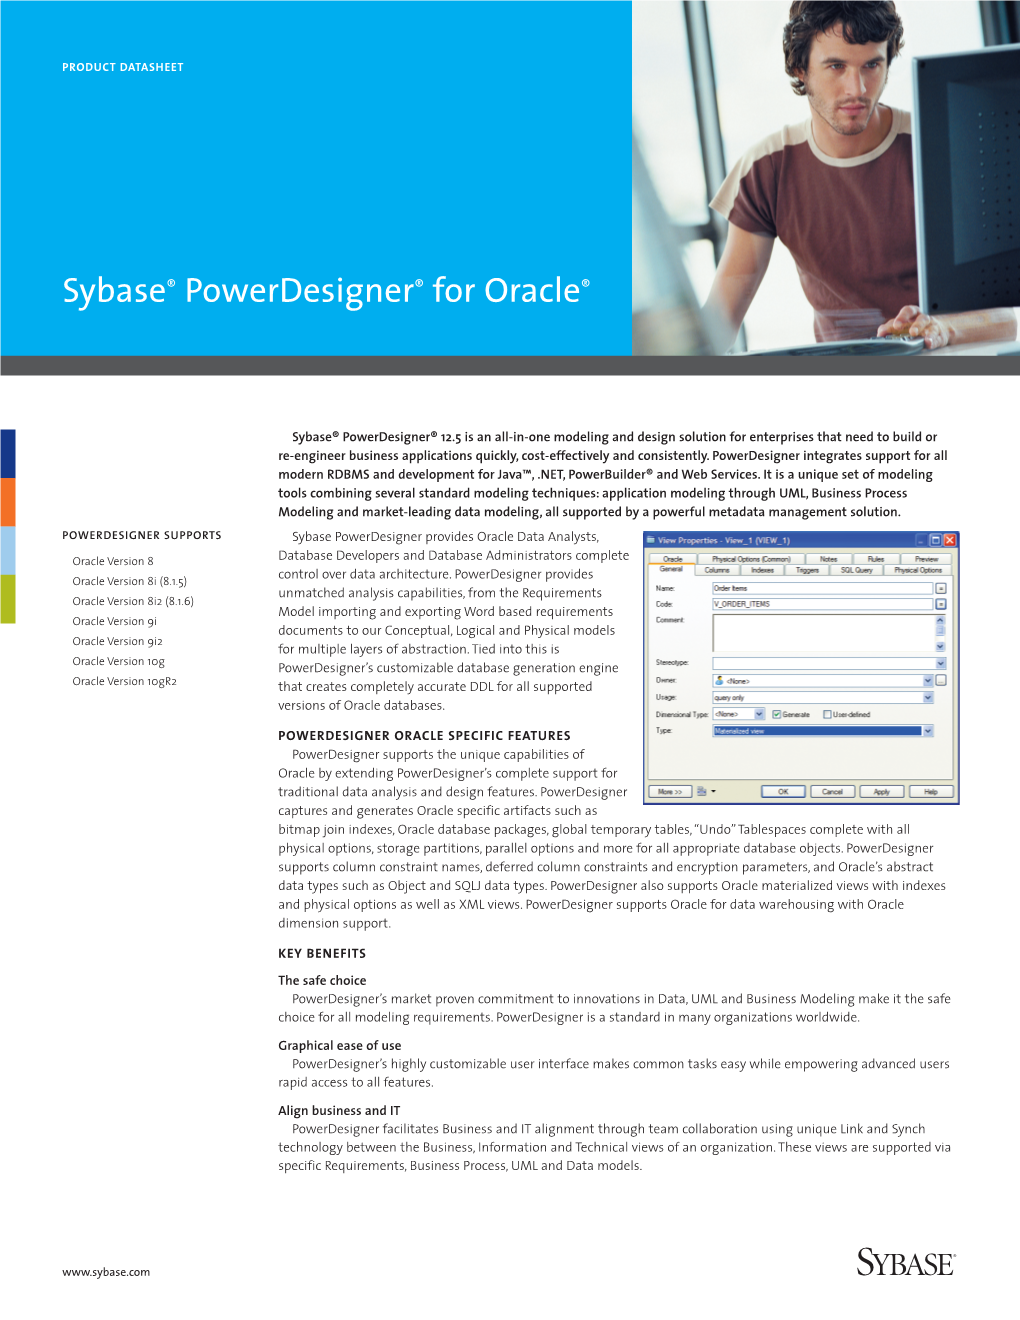 Sybase Powerdesigner for Oracle Product Datasheet